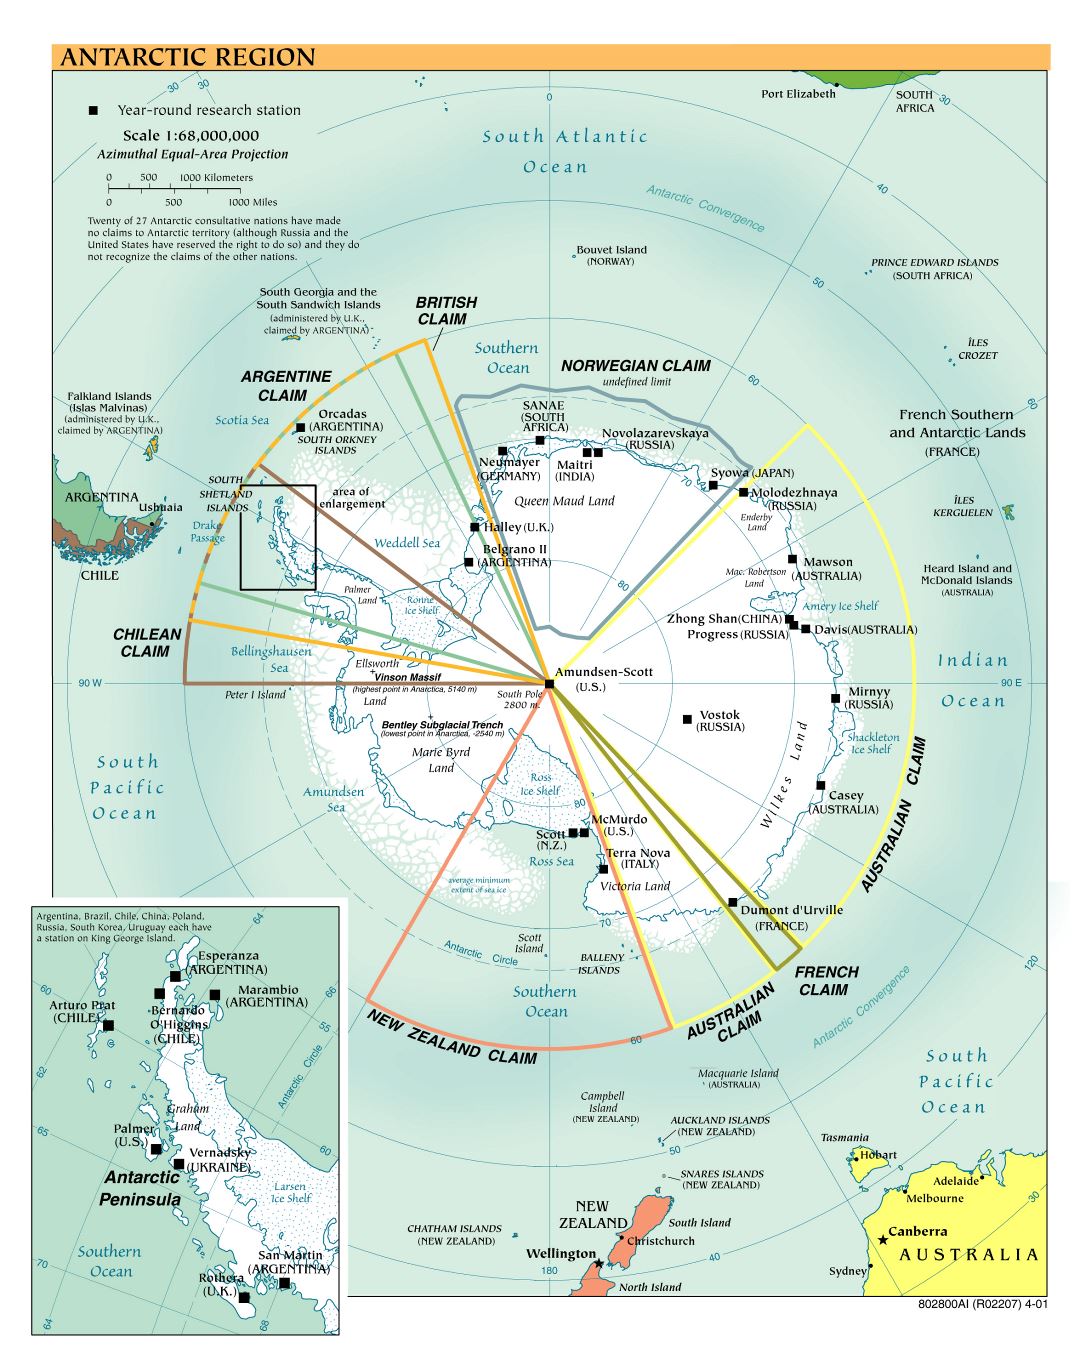 Mapa político a gran escala de la Región Antártica - 2001